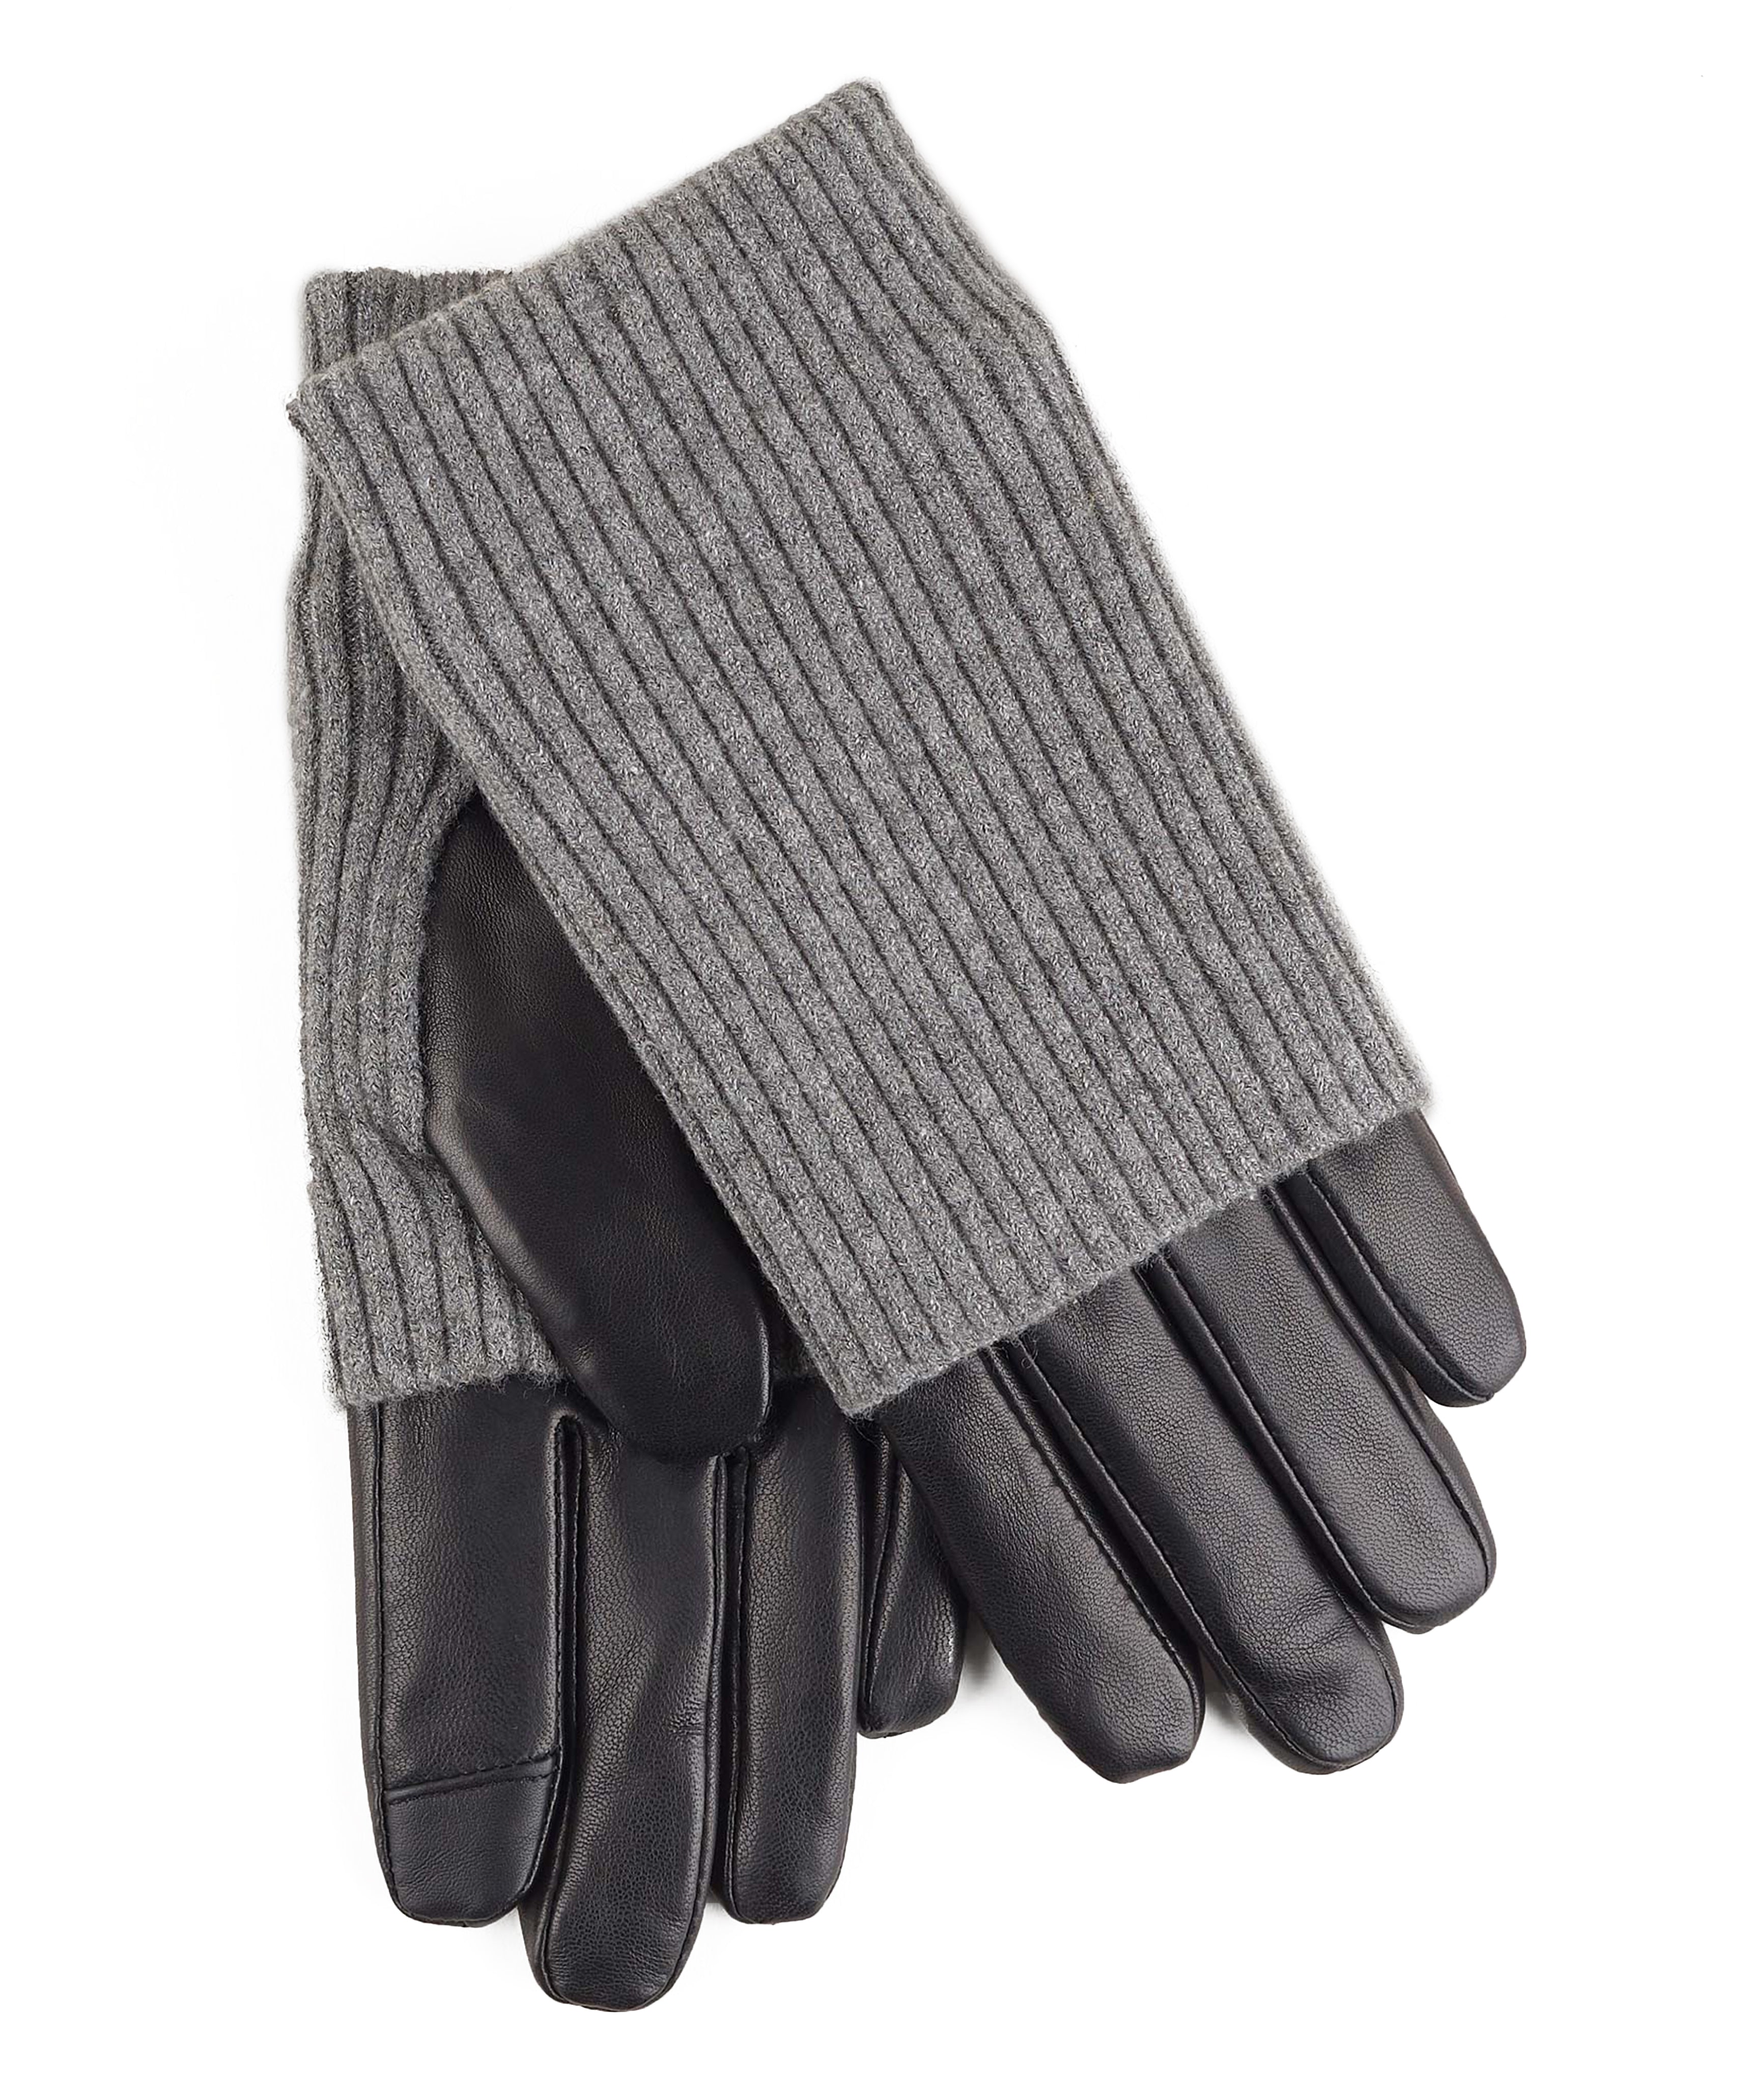 Fold Down Cuff Gloves